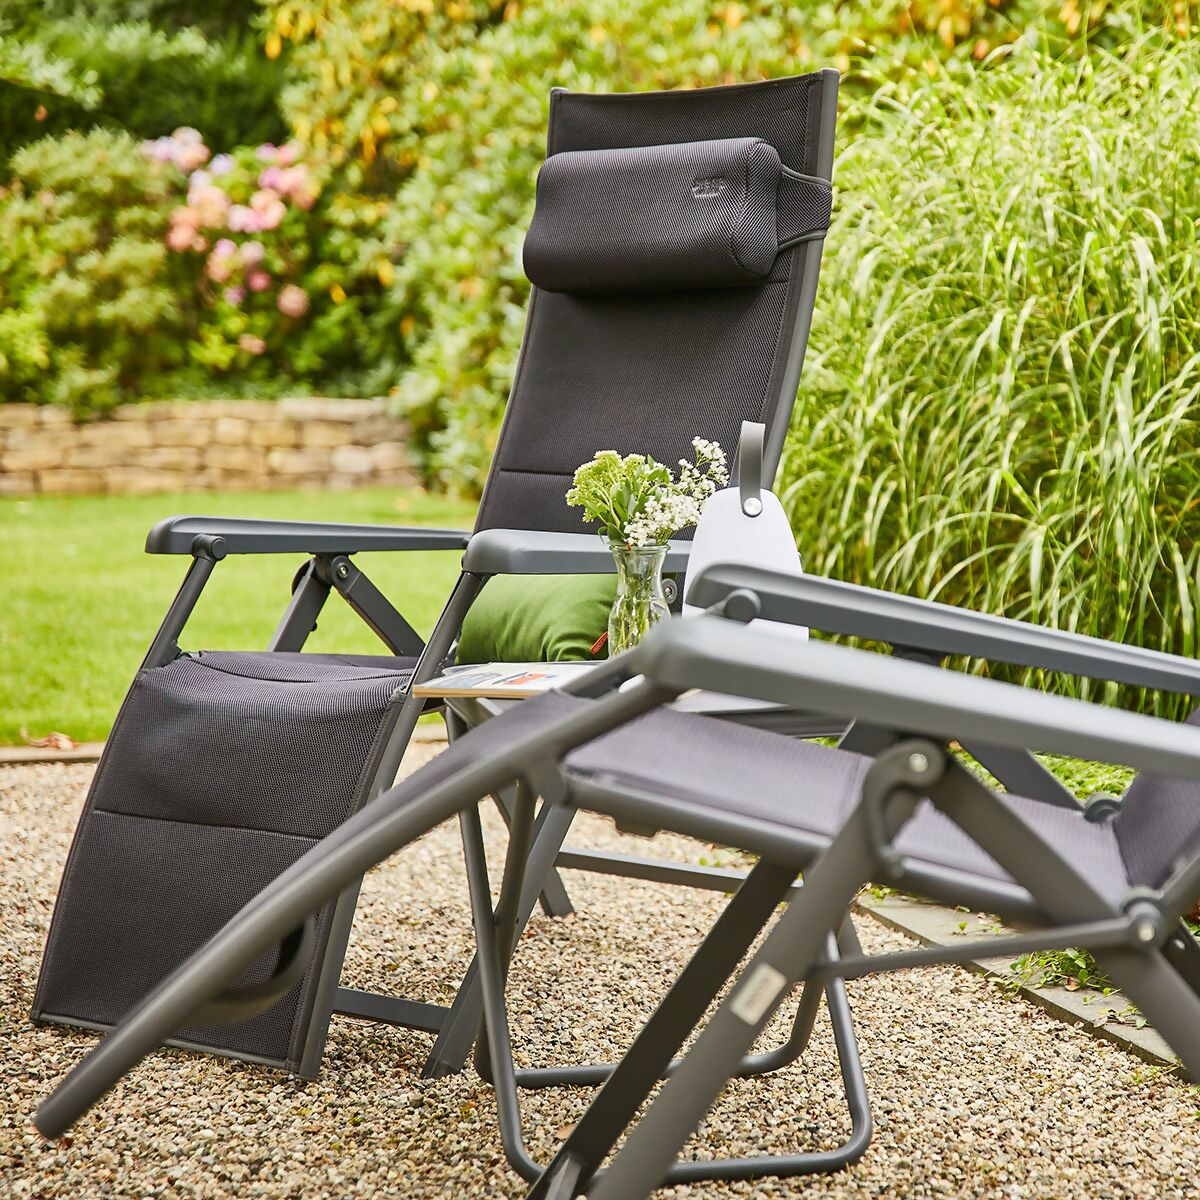 Gartenmöbel Premium-Set 4tlg. mit 2 Relaxsesseln, Hocker & Tischplatte  online kaufen bei Gärtner Pötschke